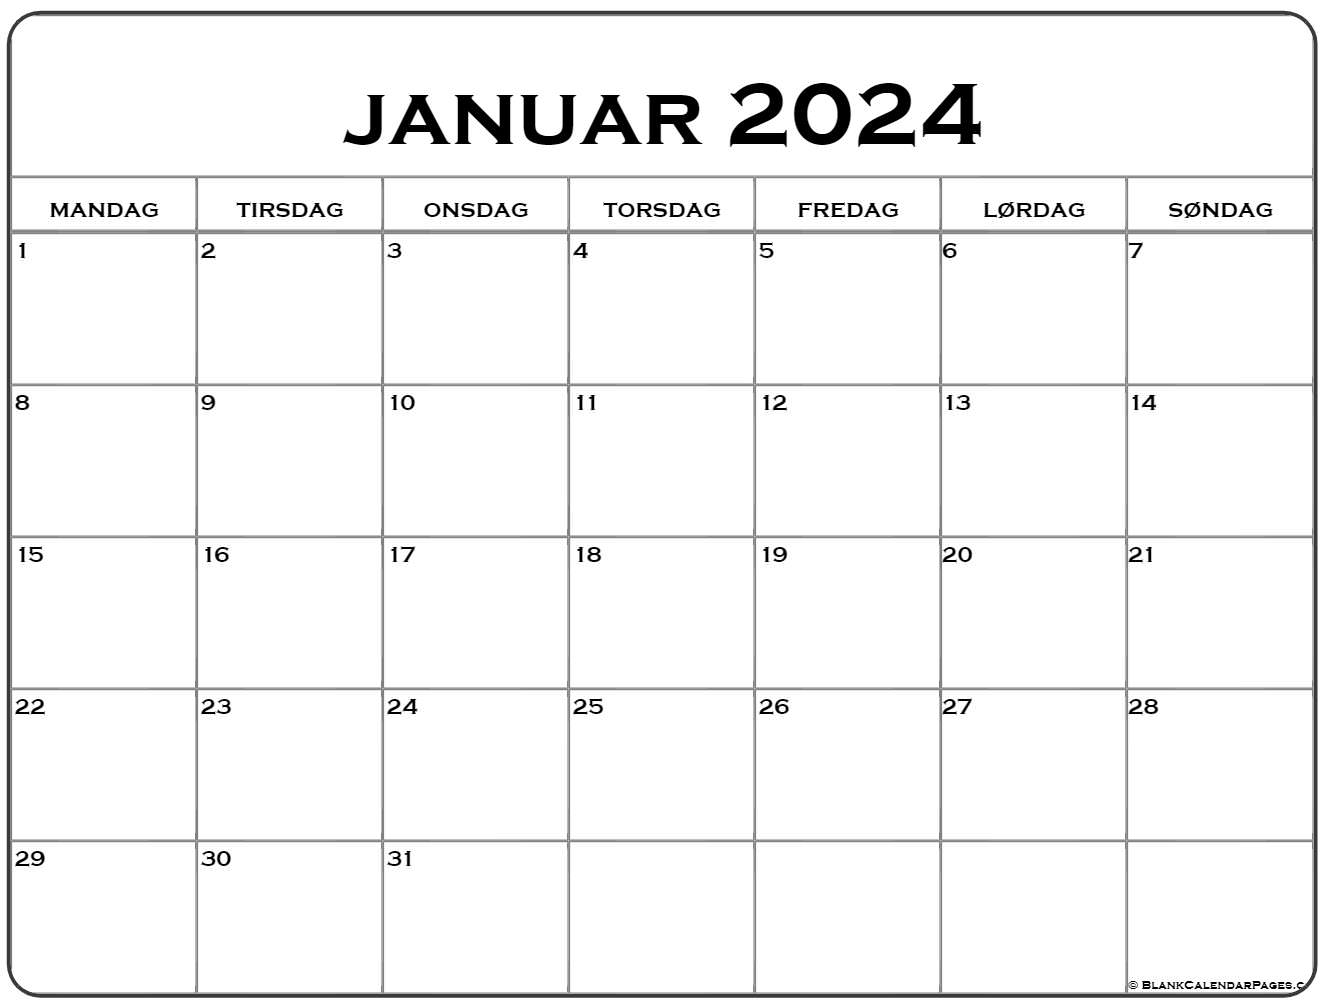 Trunk bibliotek symbol krydstogt januar 2022 kalender Dansk | Kalender januar